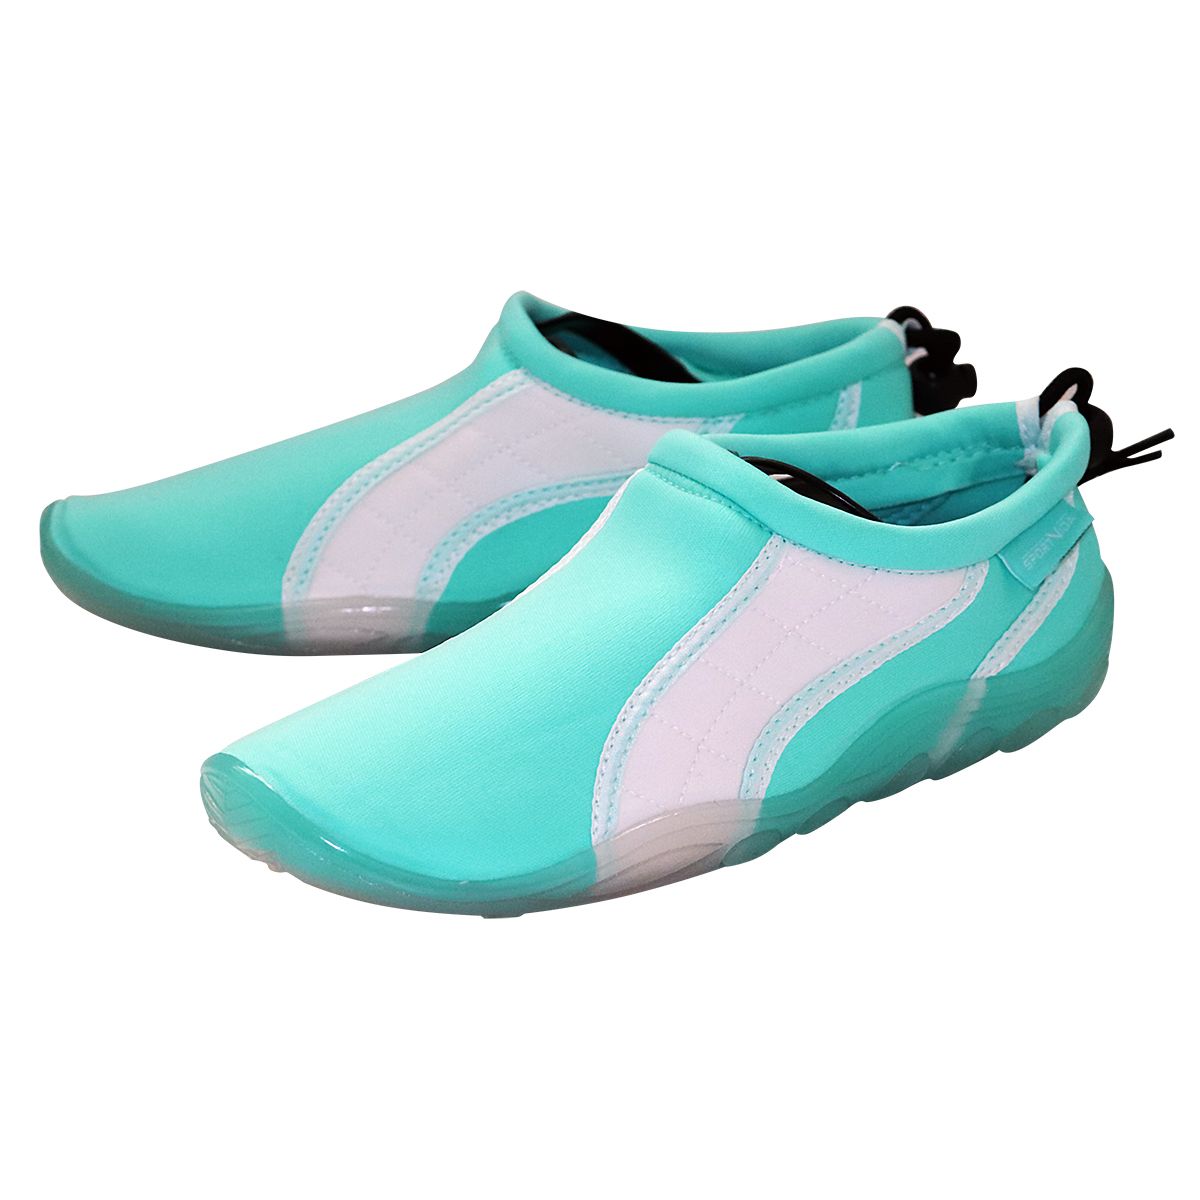 Взуття для пляжу і коралів (аквашузи) SportVida SV-GY0003-R40 Size 40 Mint